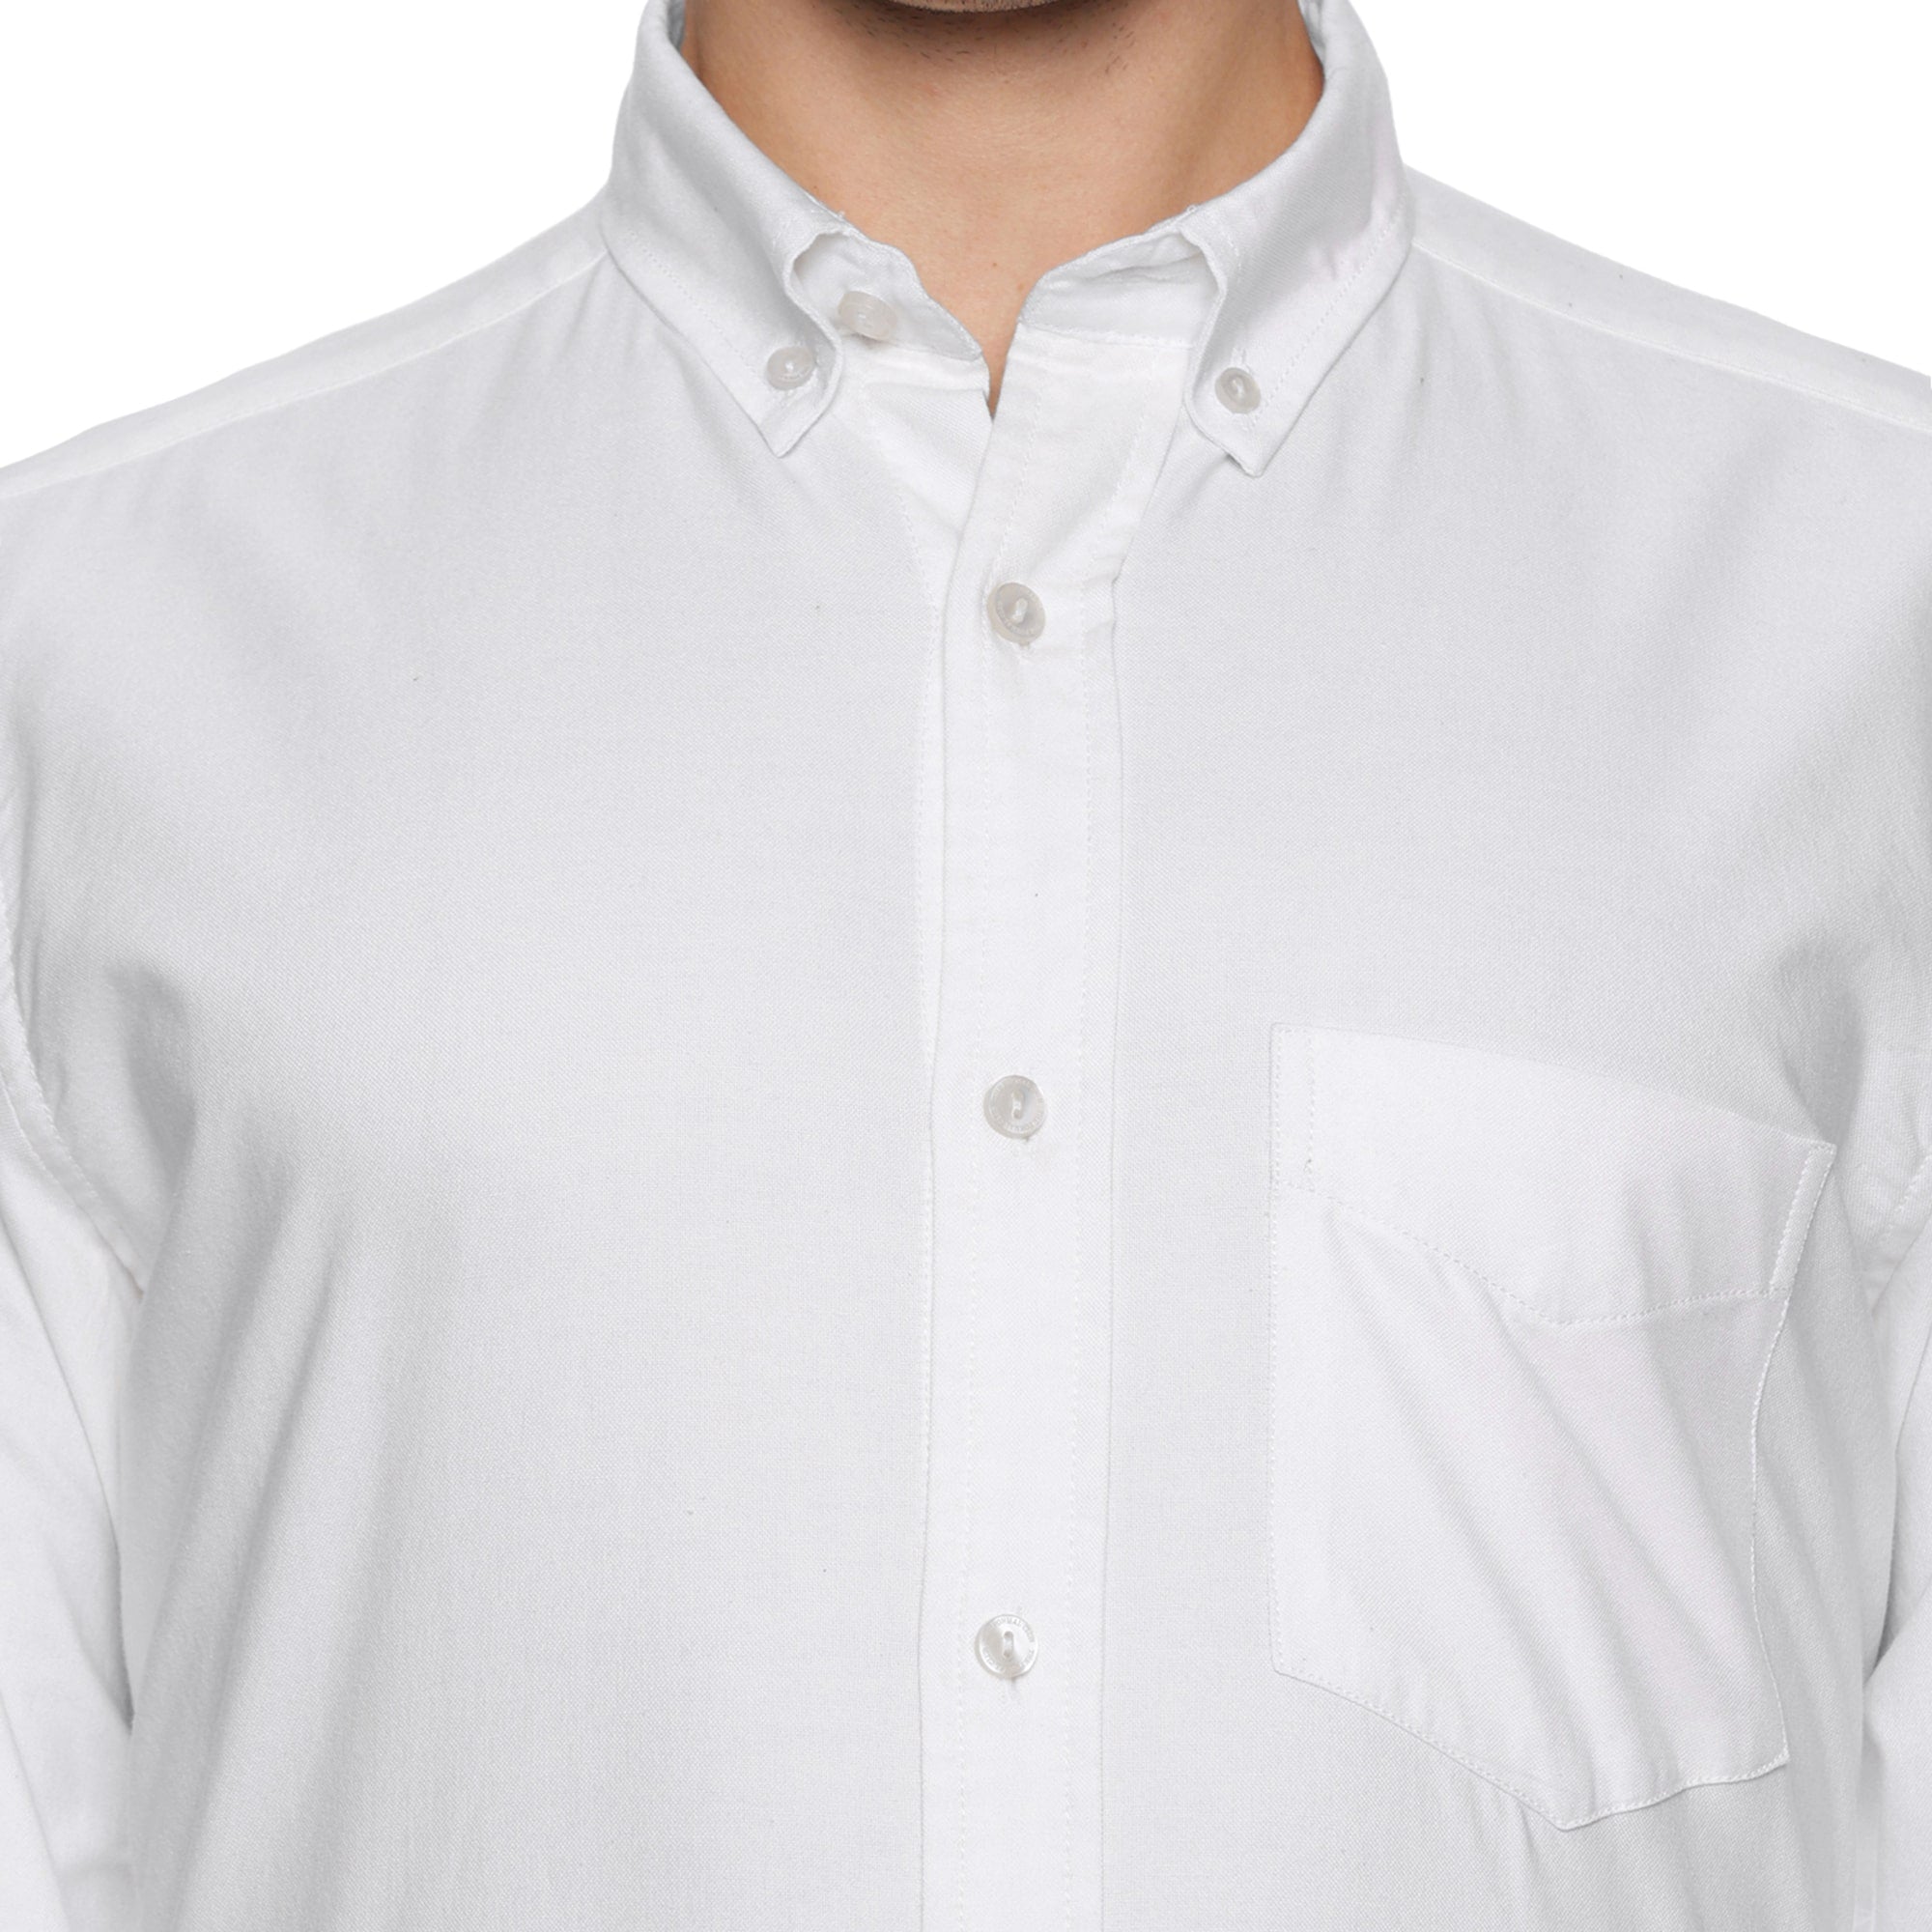 Regal Oxford White Shirt